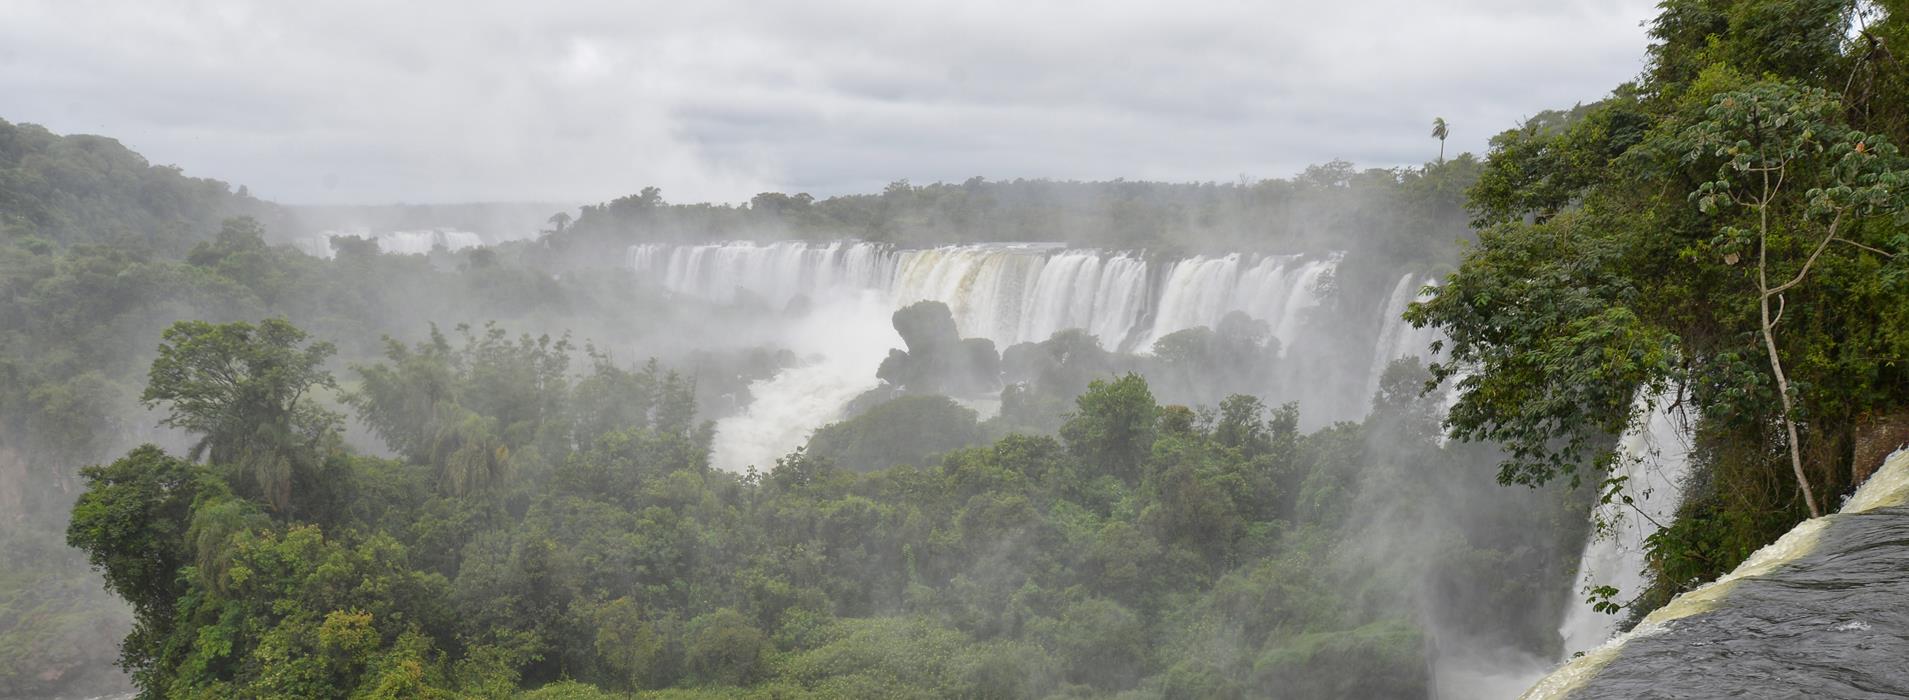 Панорама водопада Игуасу - интерьерная фотокартина